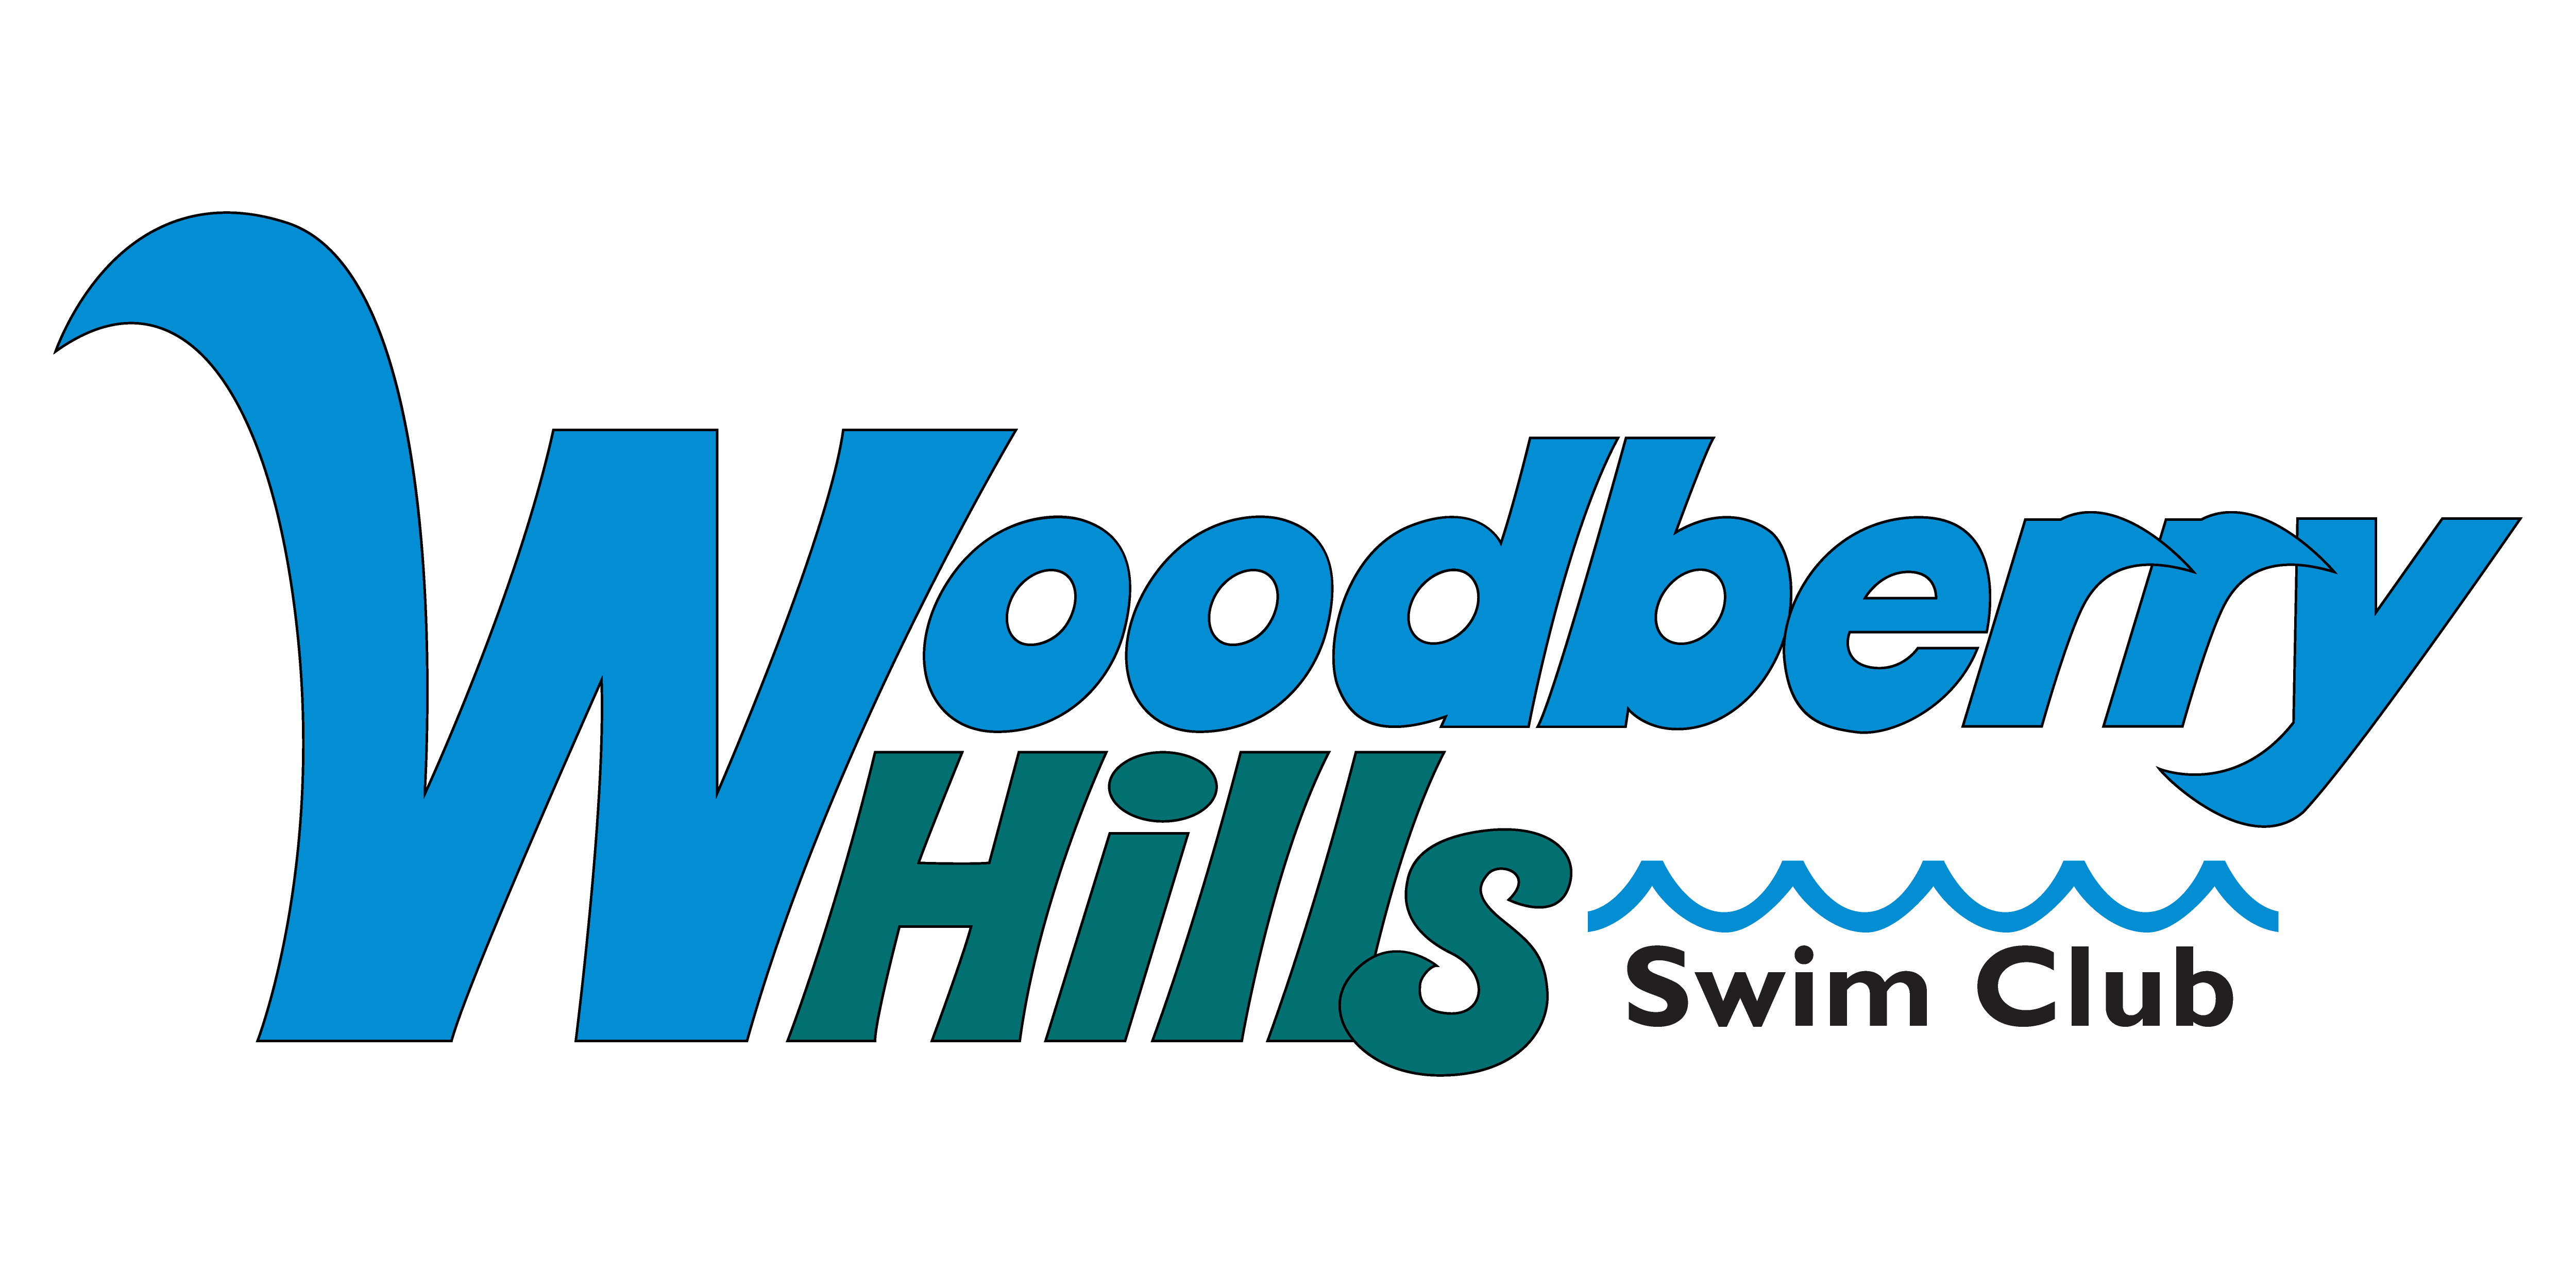 Woodberry Hills Swim Club logo